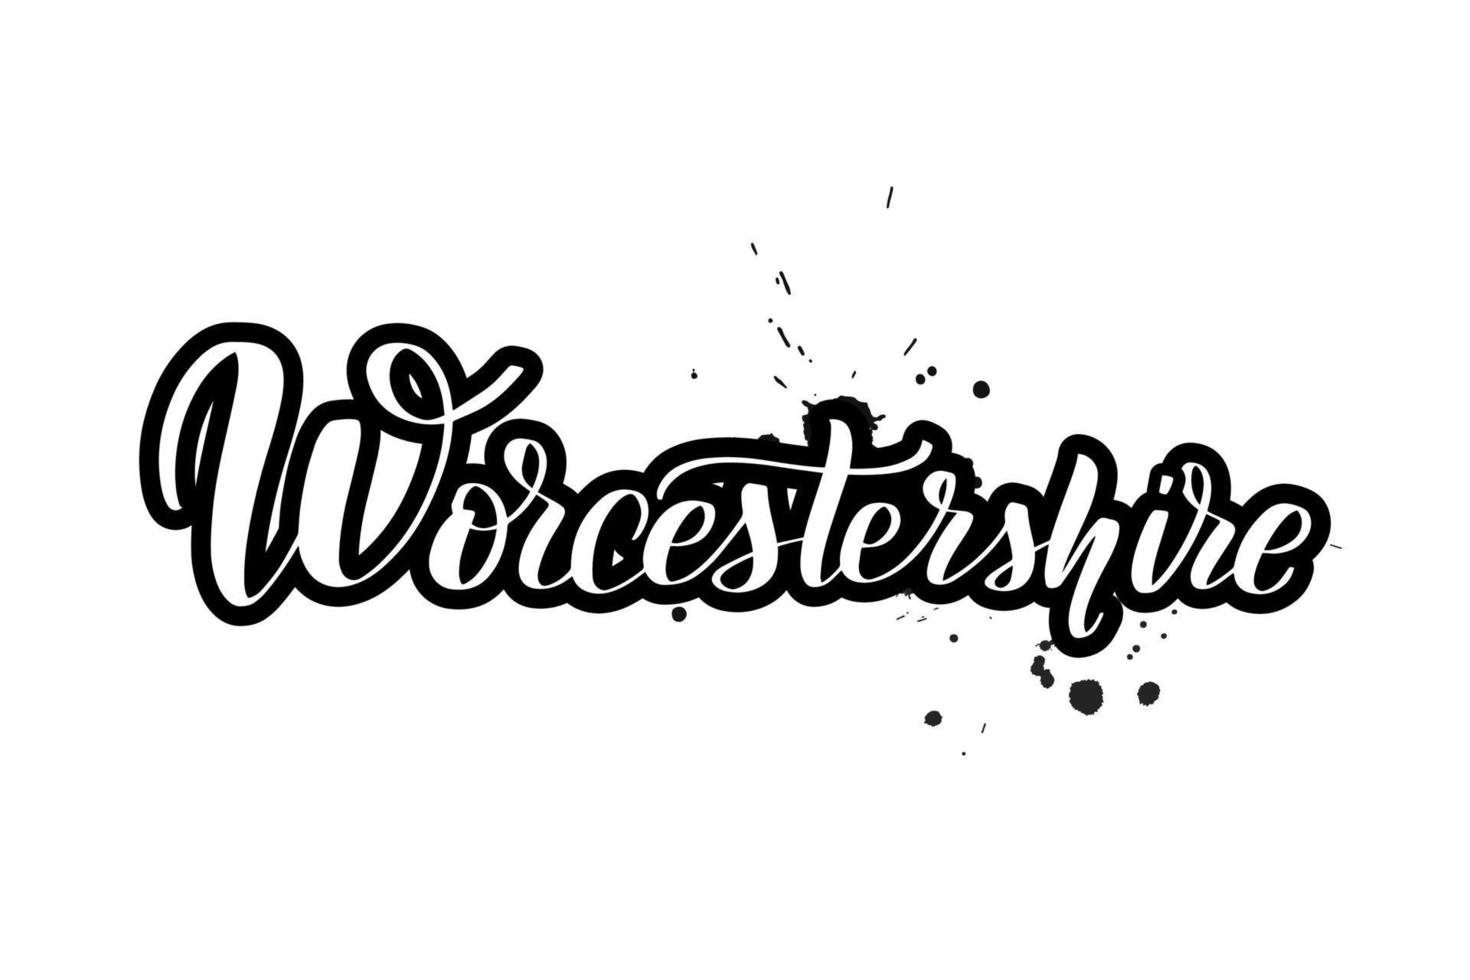 ispirazione scritta a mano pennello lettering Worcestershire. illustrazione di calligrafia vettoriale isolata su sfondo bianco. tipografia per striscioni, distintivi, cartoline, magliette, stampe, poster.